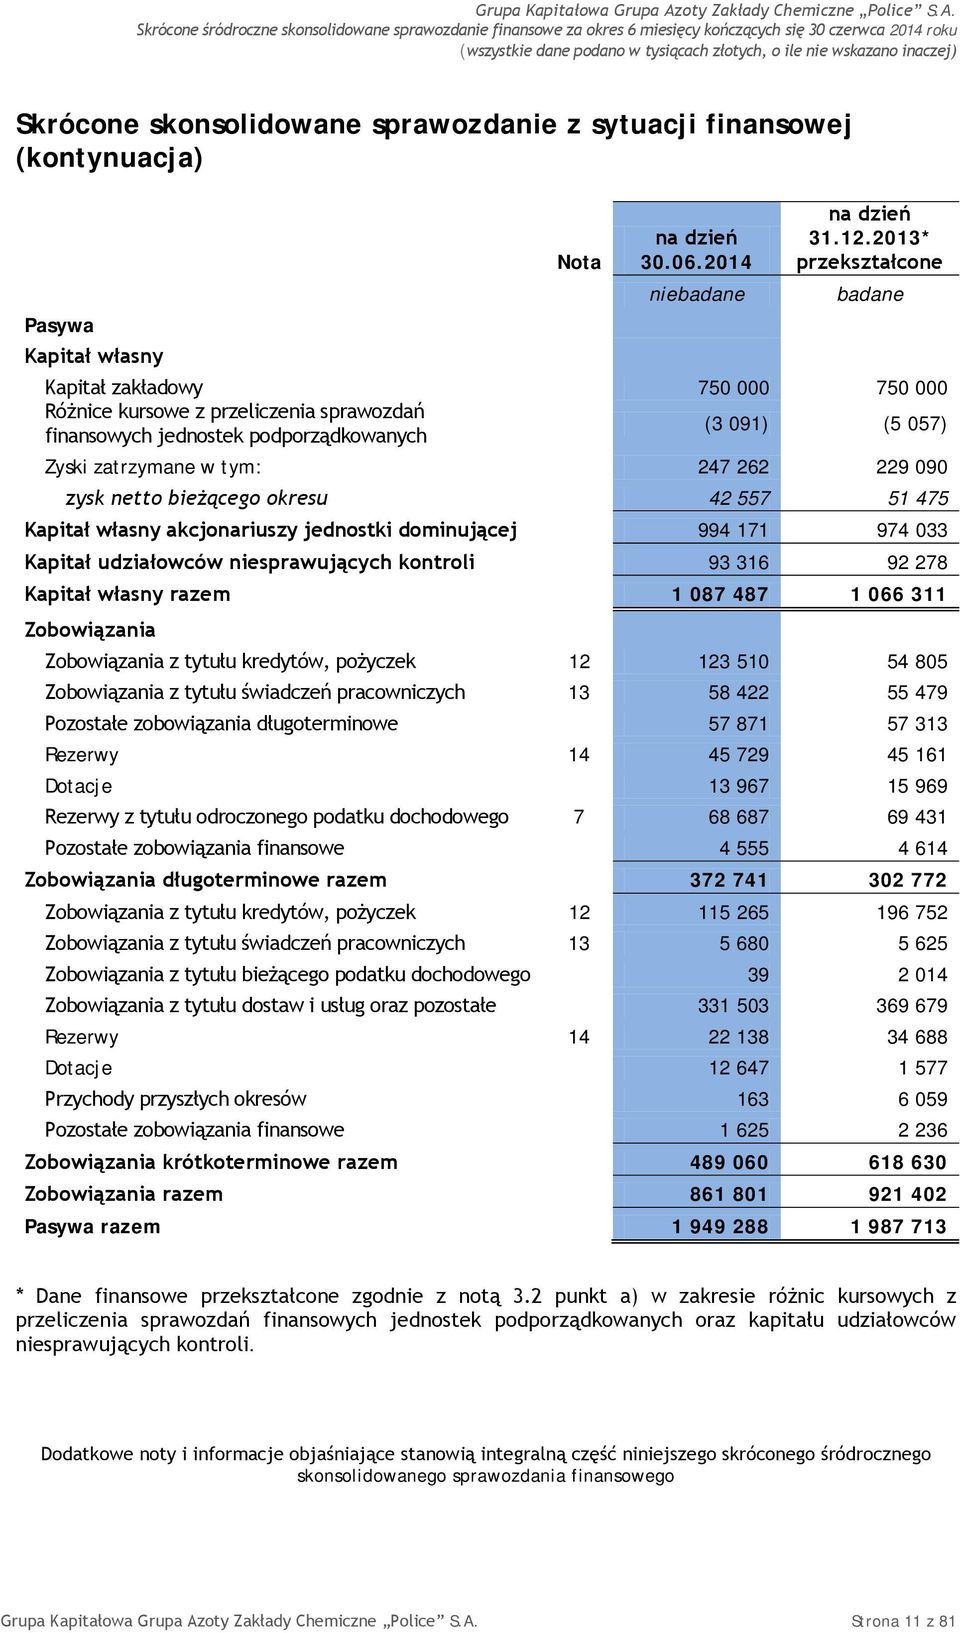 2013* przekształcone badane Kapitał zakładowy 750 000 750 000 Różnice kursowe z przeliczenia sprawozdań finansowych jednostek podporządkowanych (3 091) (5 057) Zyski zatrzymane w tym: 247 262 229 090